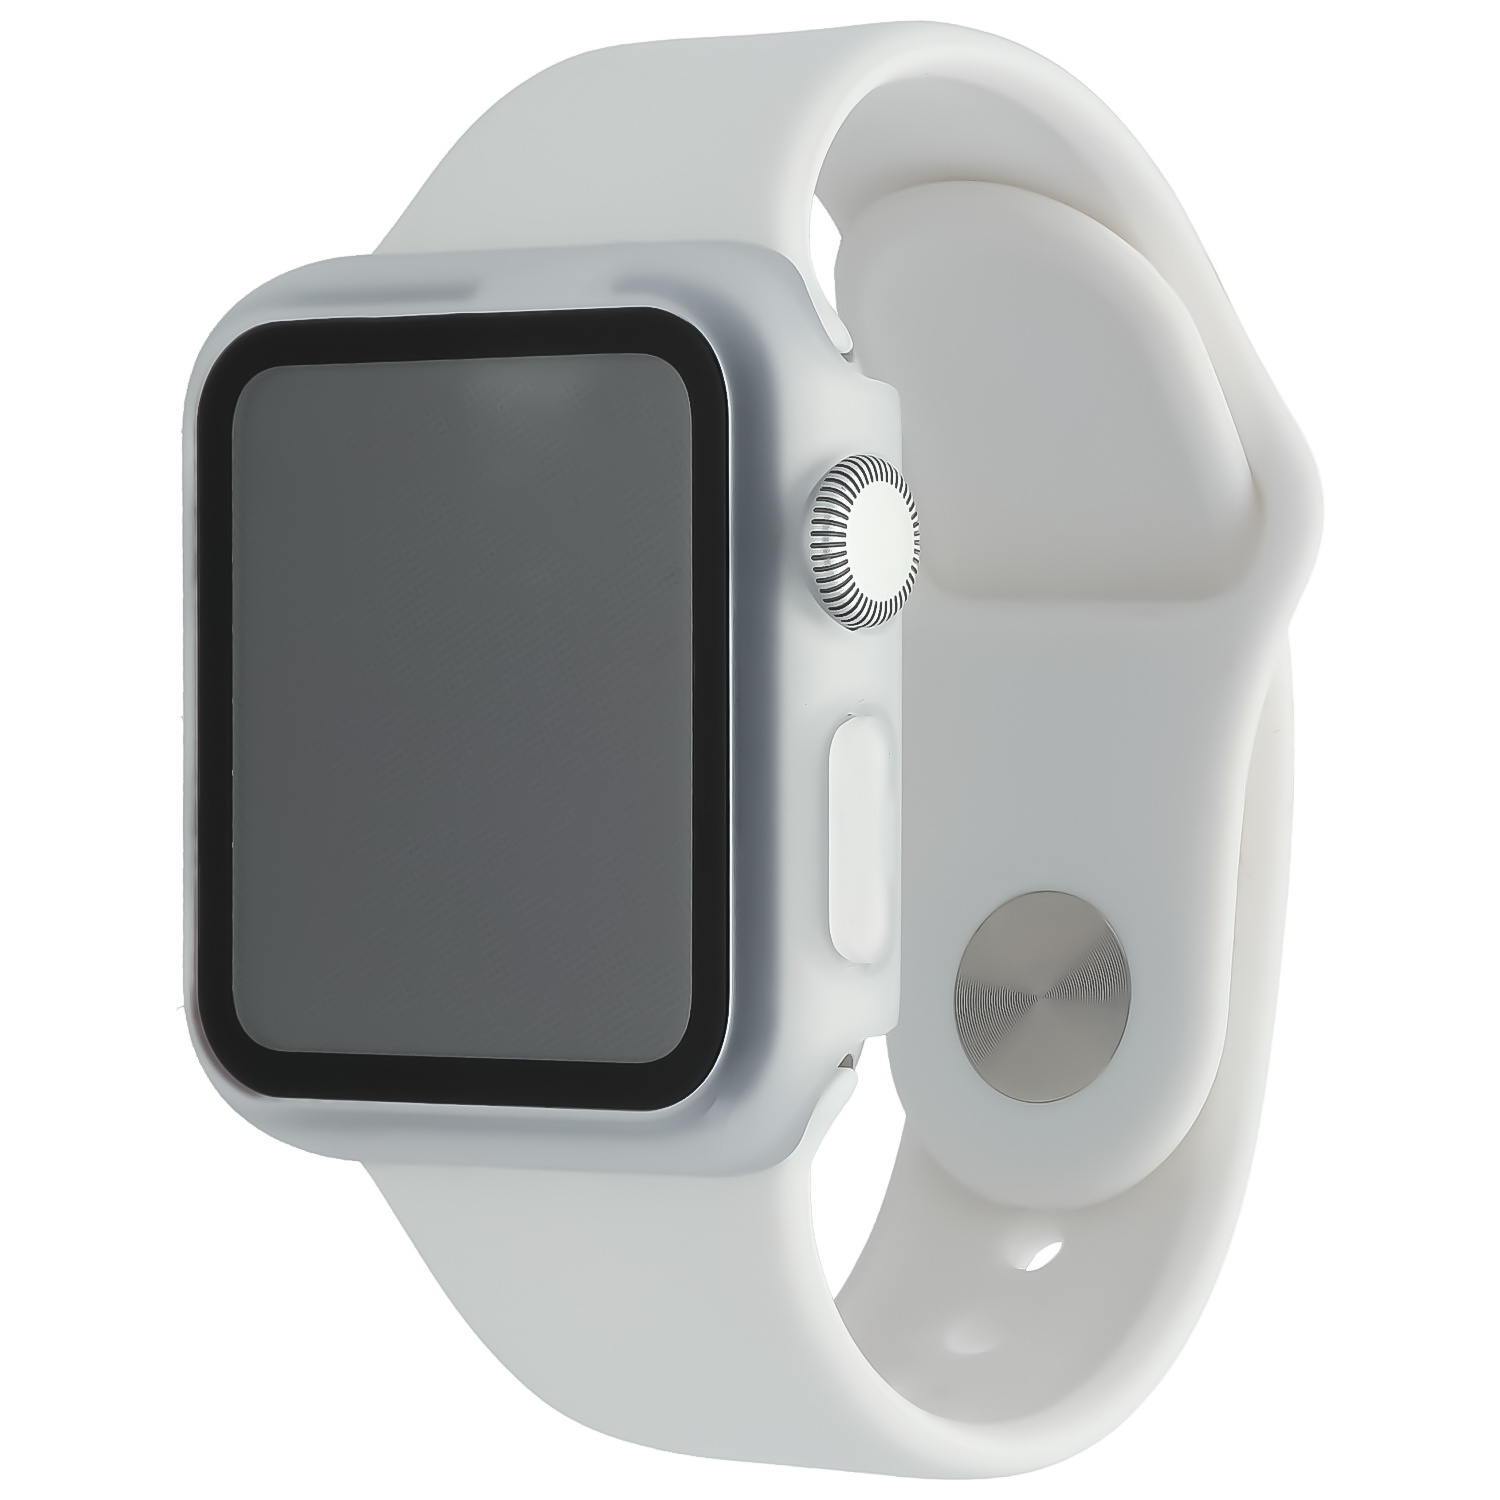 Estuche rígido para el Apple Watch - transparente mate